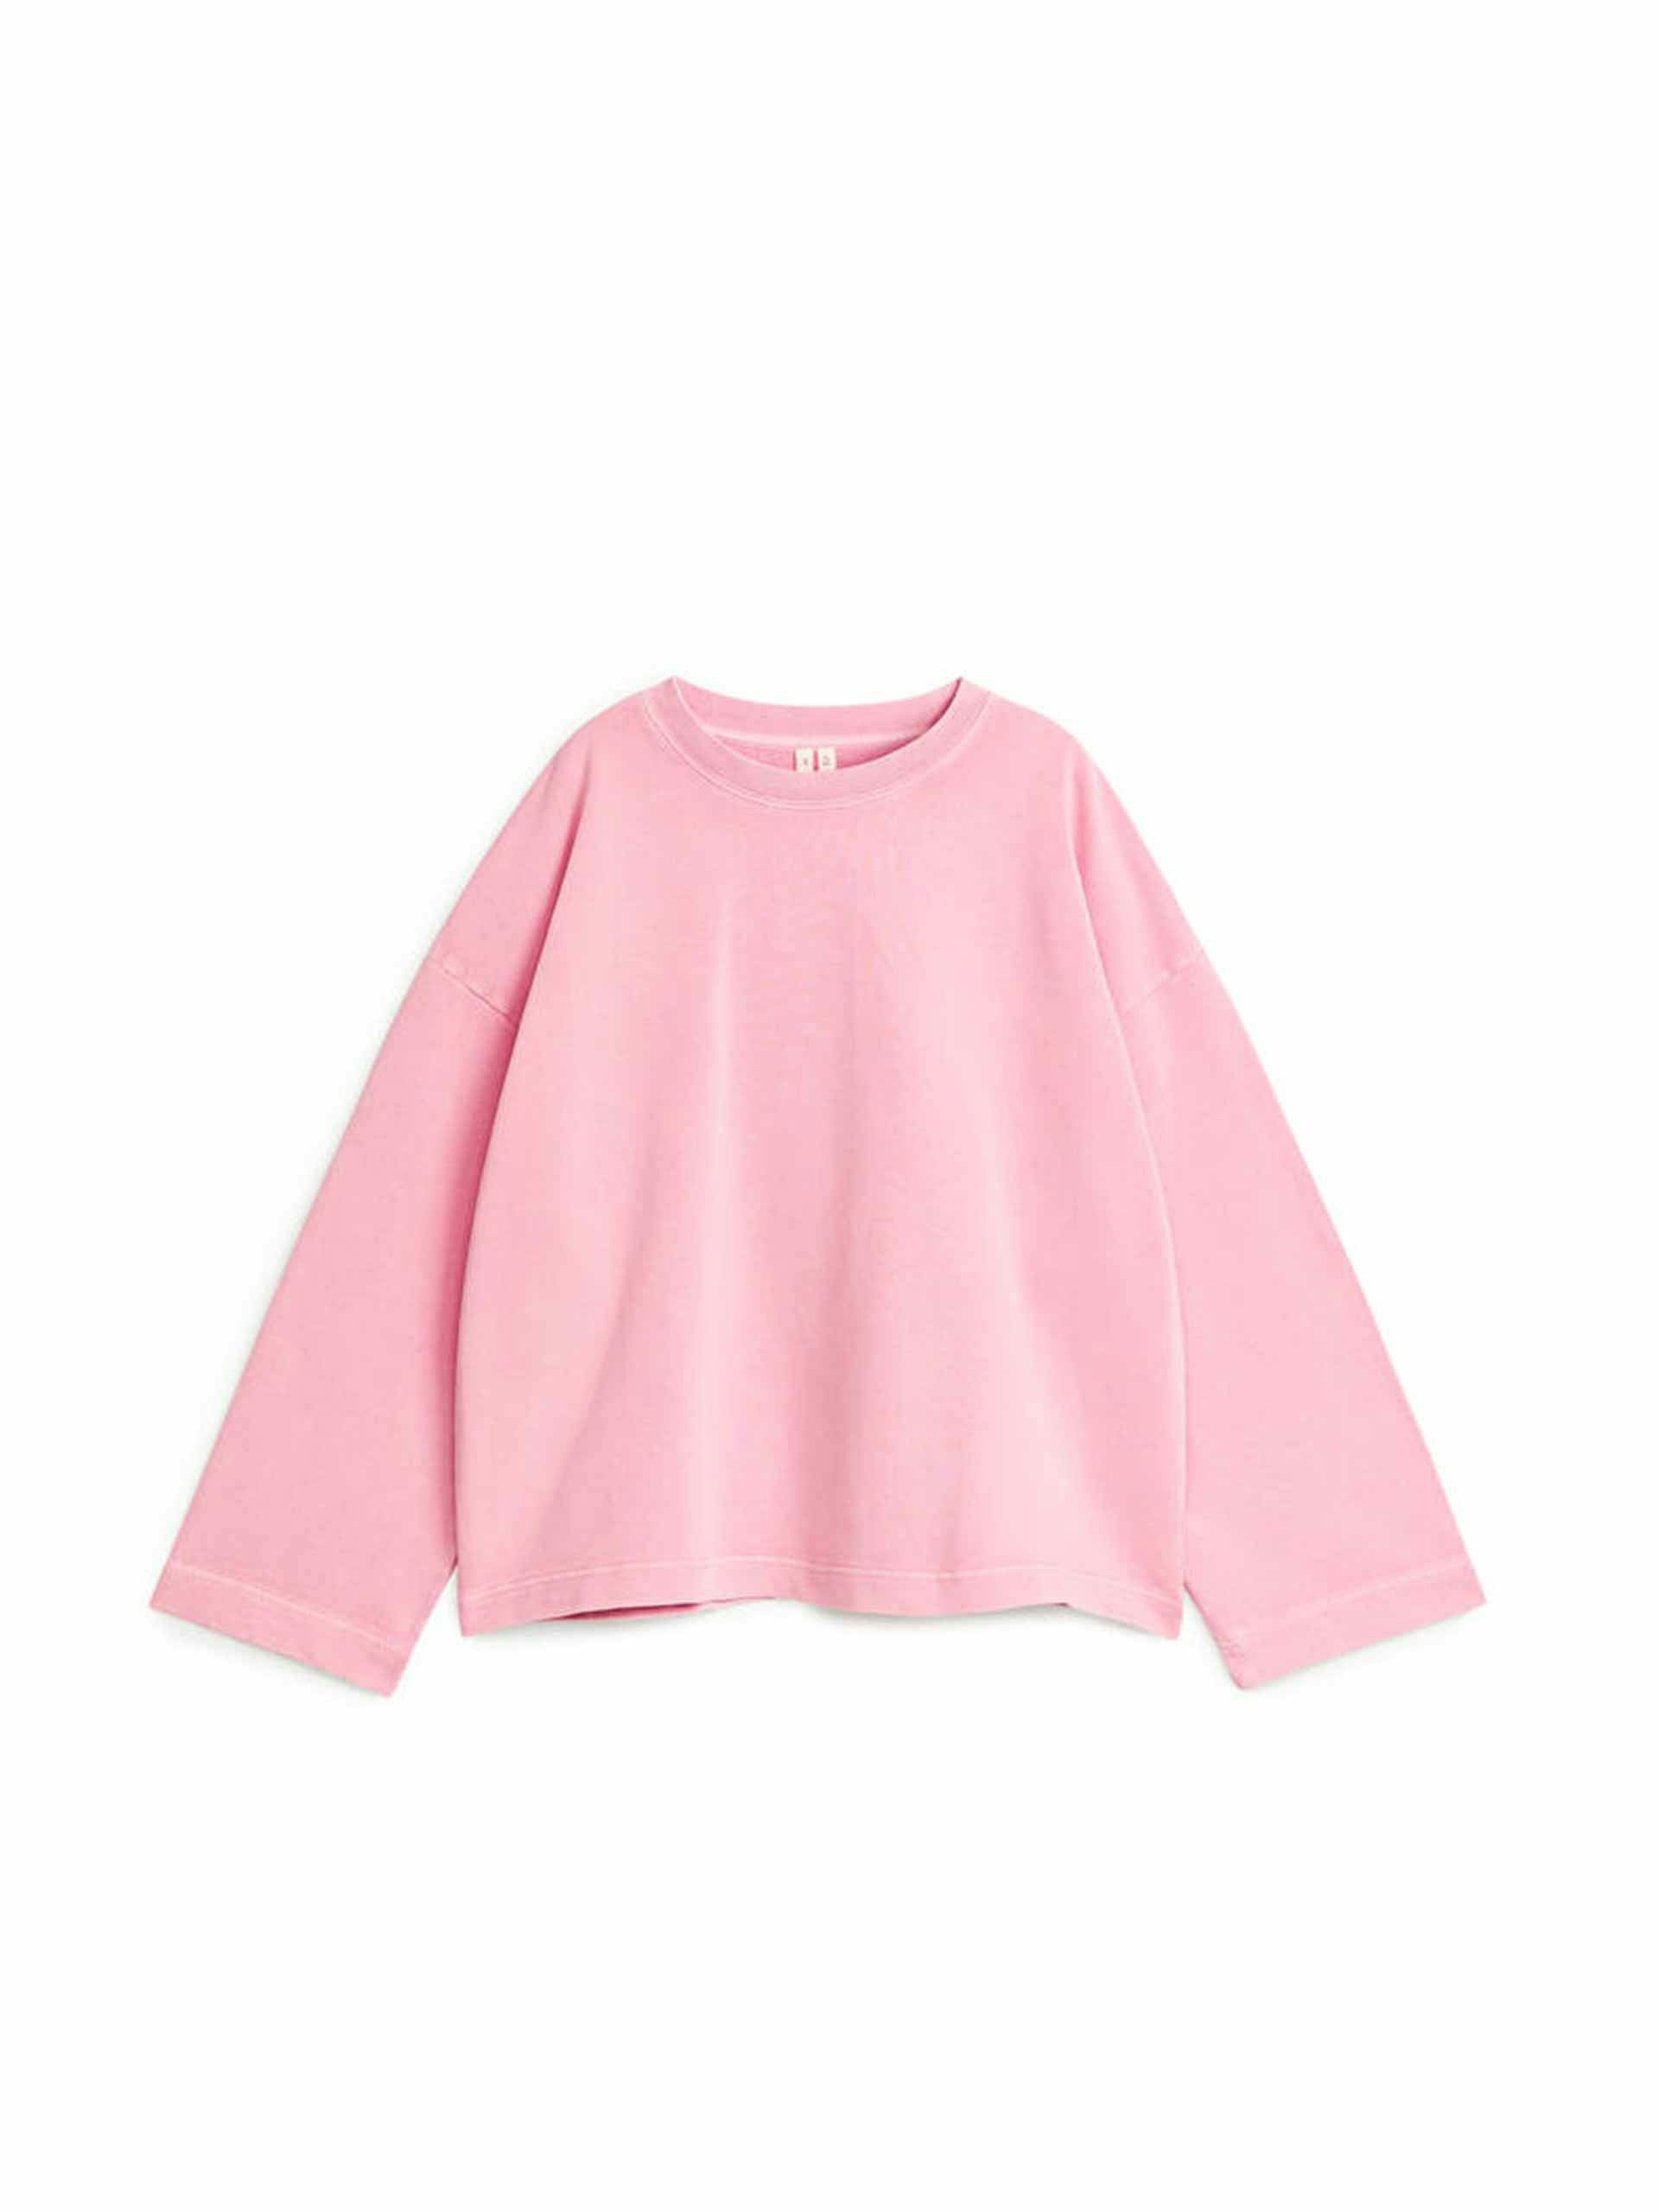 Pink loose fit sweatshirt